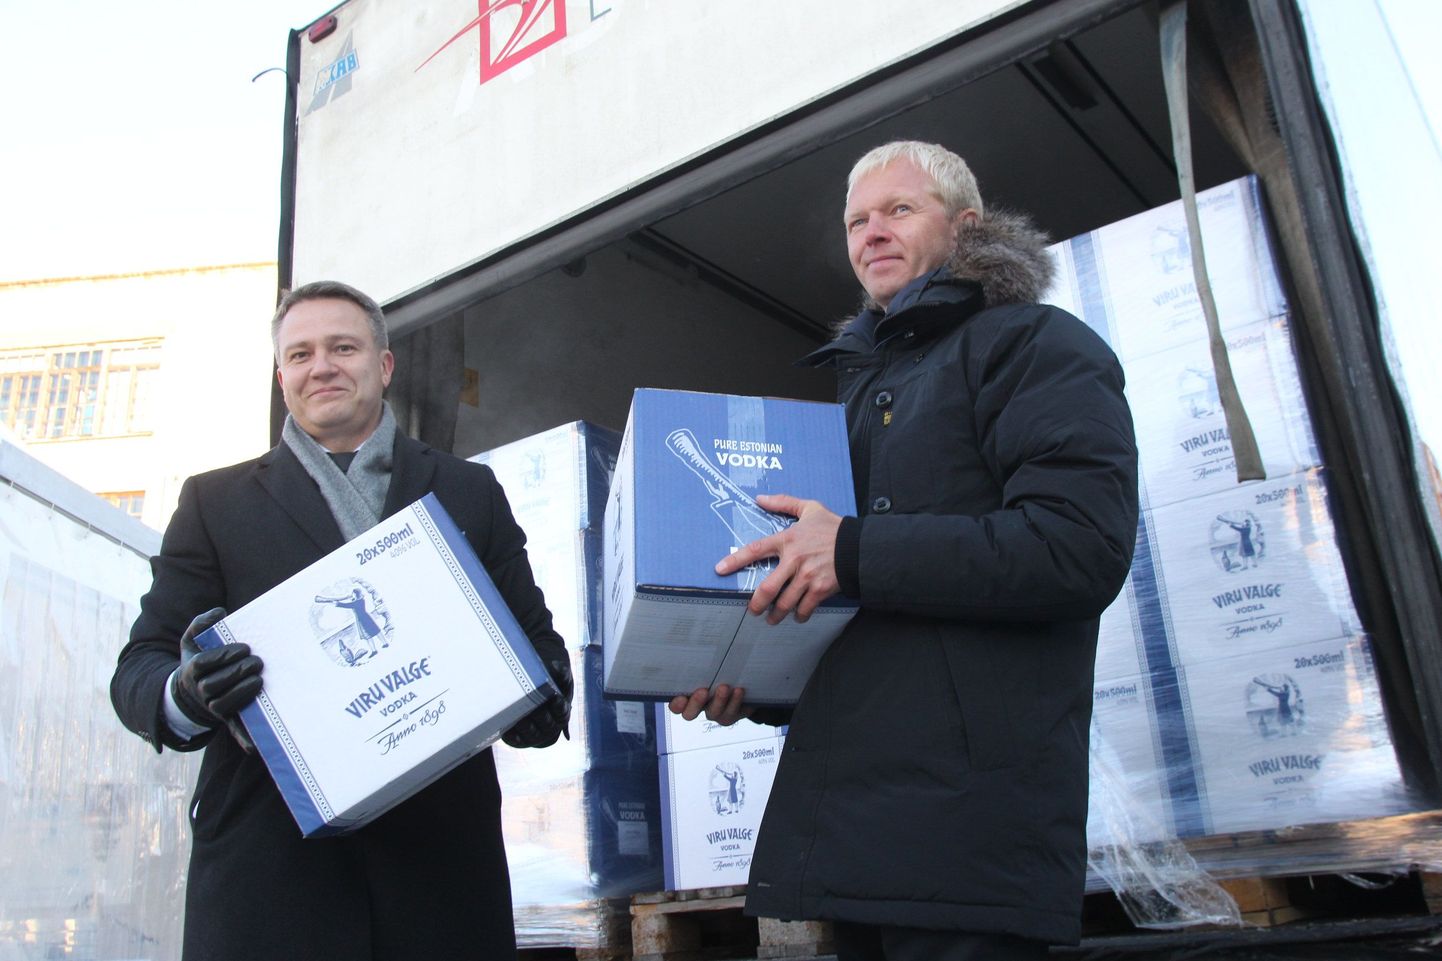 Liviko juhataja Janek Kalvi (vasakul) plaani kohaselt hakkab ettevõte tuleval aastal viina Lätist müüma.